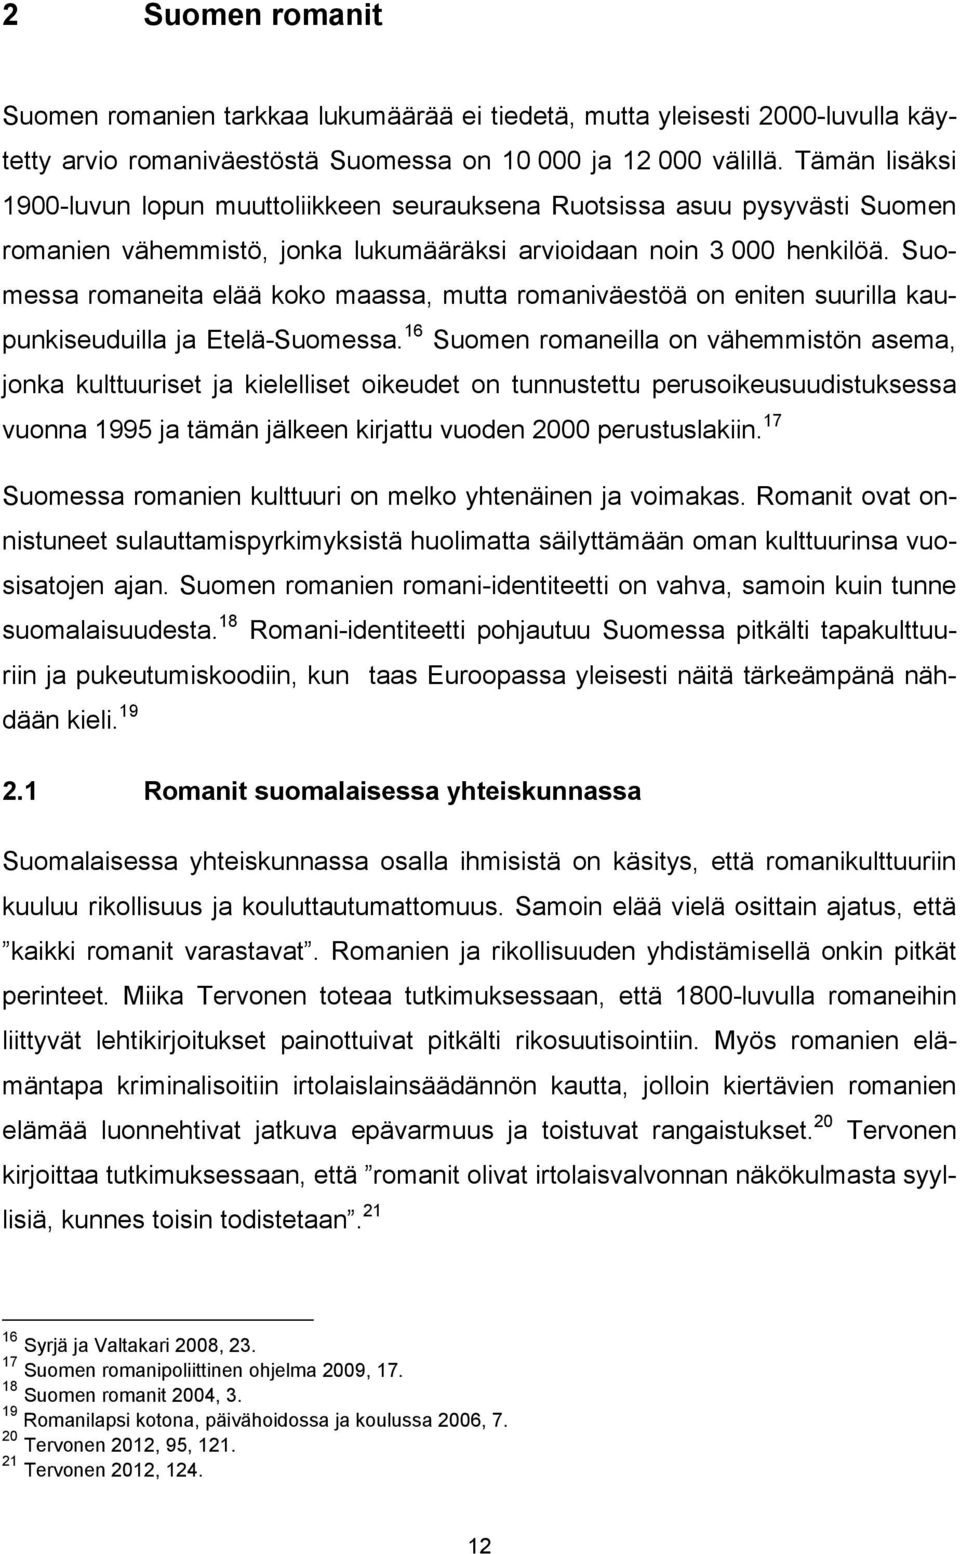 Suomessa romaneita elää koko maassa, mutta romaniväestöä on eniten suurilla kaupunkiseuduilla ja Etelä-Suomessa.